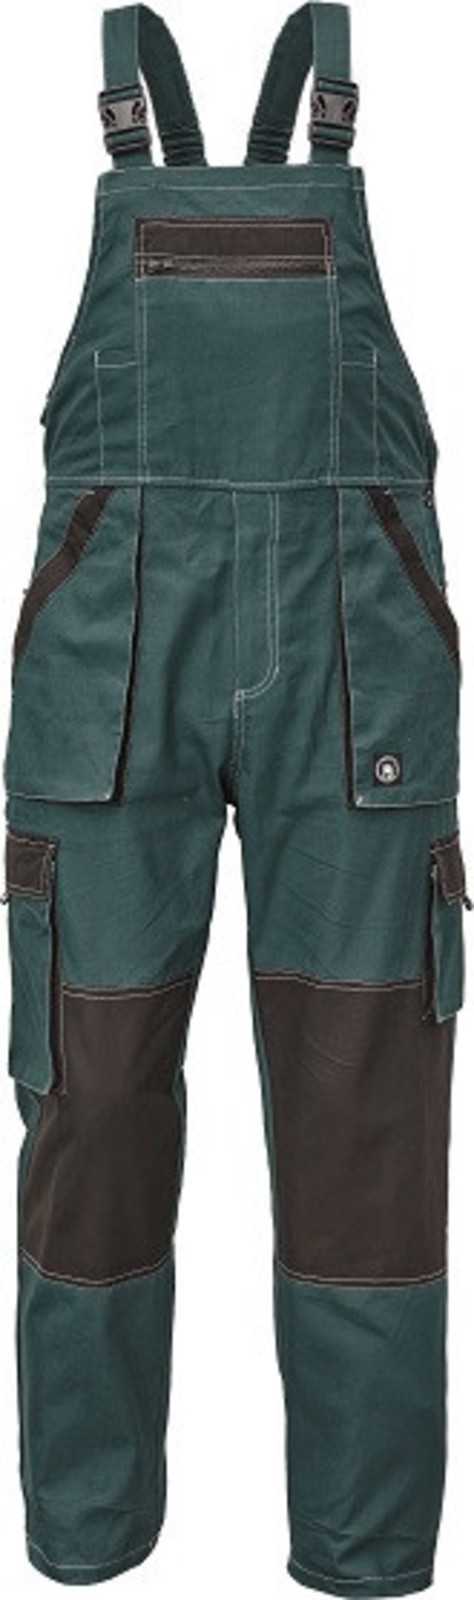 Tenšie bavlnené montérky na traky Max Summer - veľkosť: 48, farba: zelená/čierna